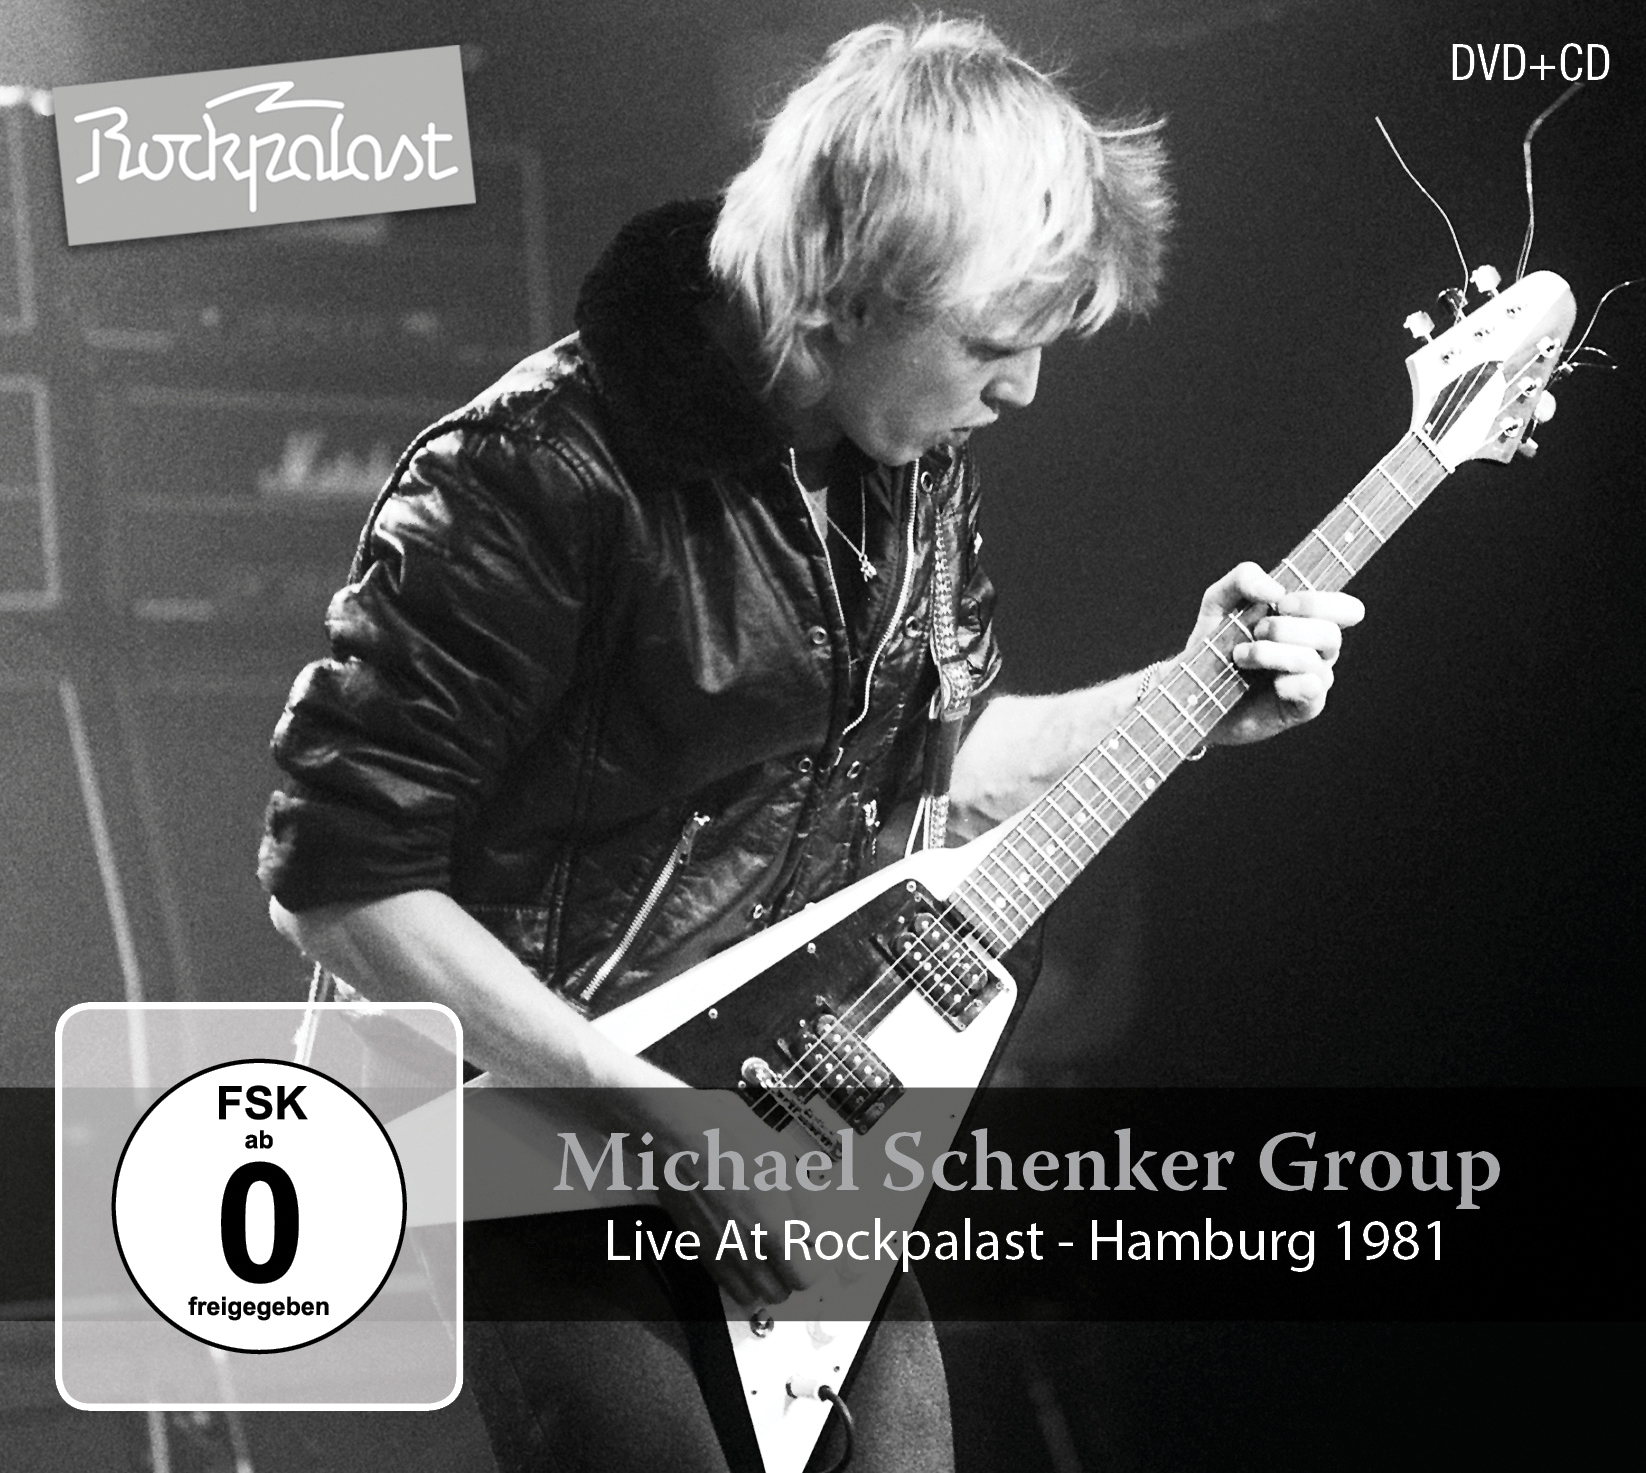 Michael Schenker Group - Live At Rockpalast: Hamburg 1981 - MVD ...